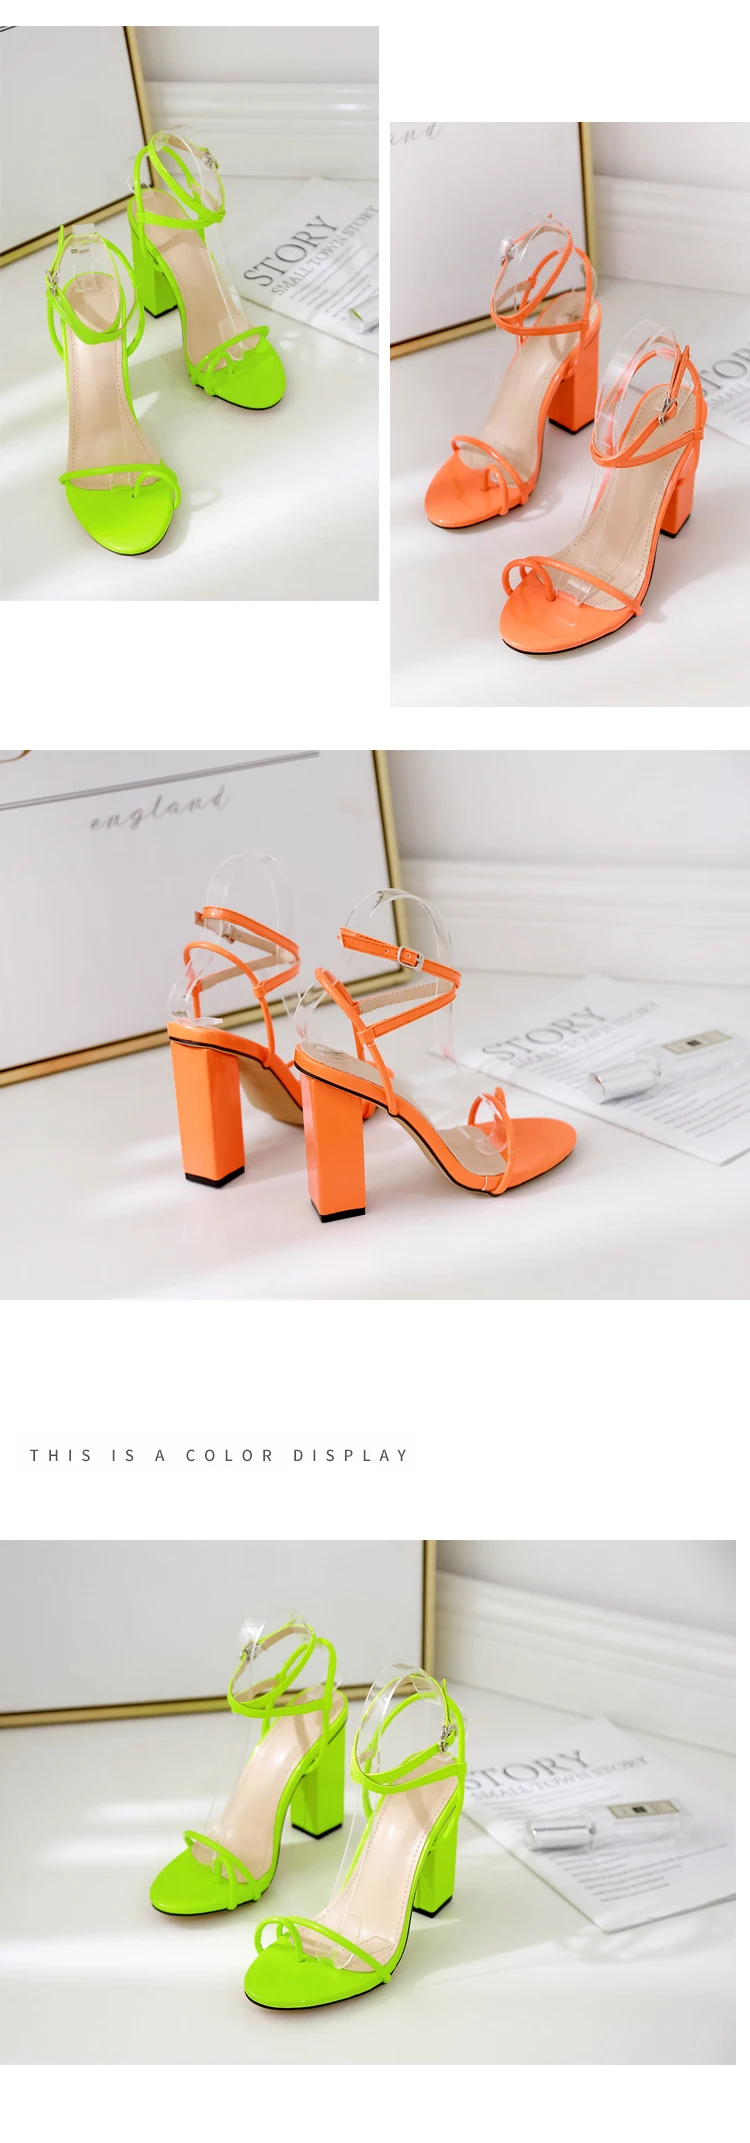 Aneikeh/ г. Модные Классические босоножки из pu искусственной кожи женские туфли на высоком квадратном каблуке с тонким ремешком, с круглым носком, с пряжкой, вечерние офисные туфли оранжевого и зеленого цвета, размеры 35-40